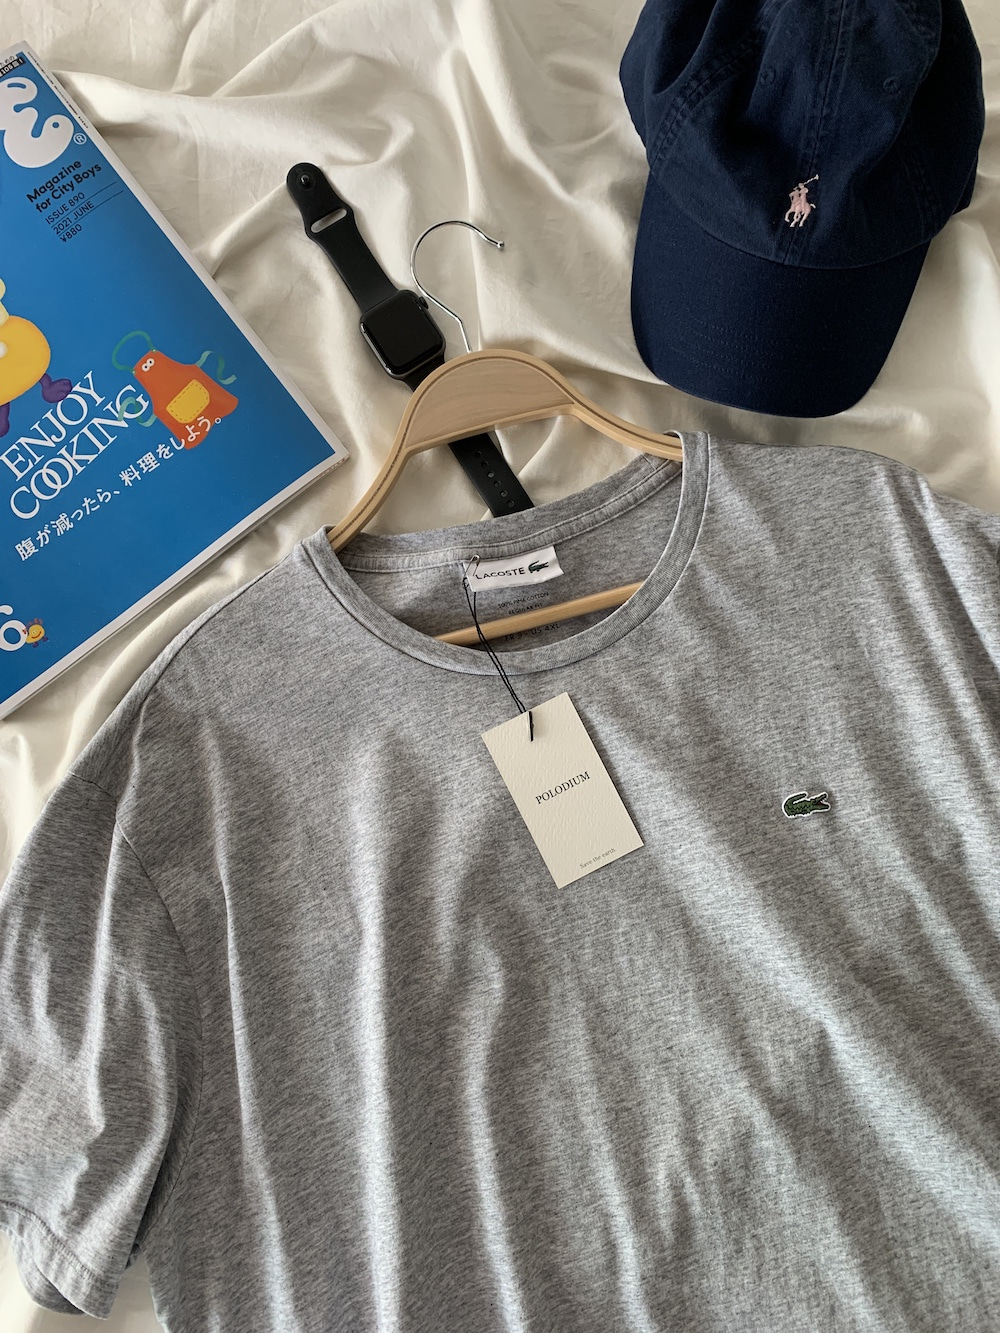 [ 9 ] Lacoste T-Shirt (5555)